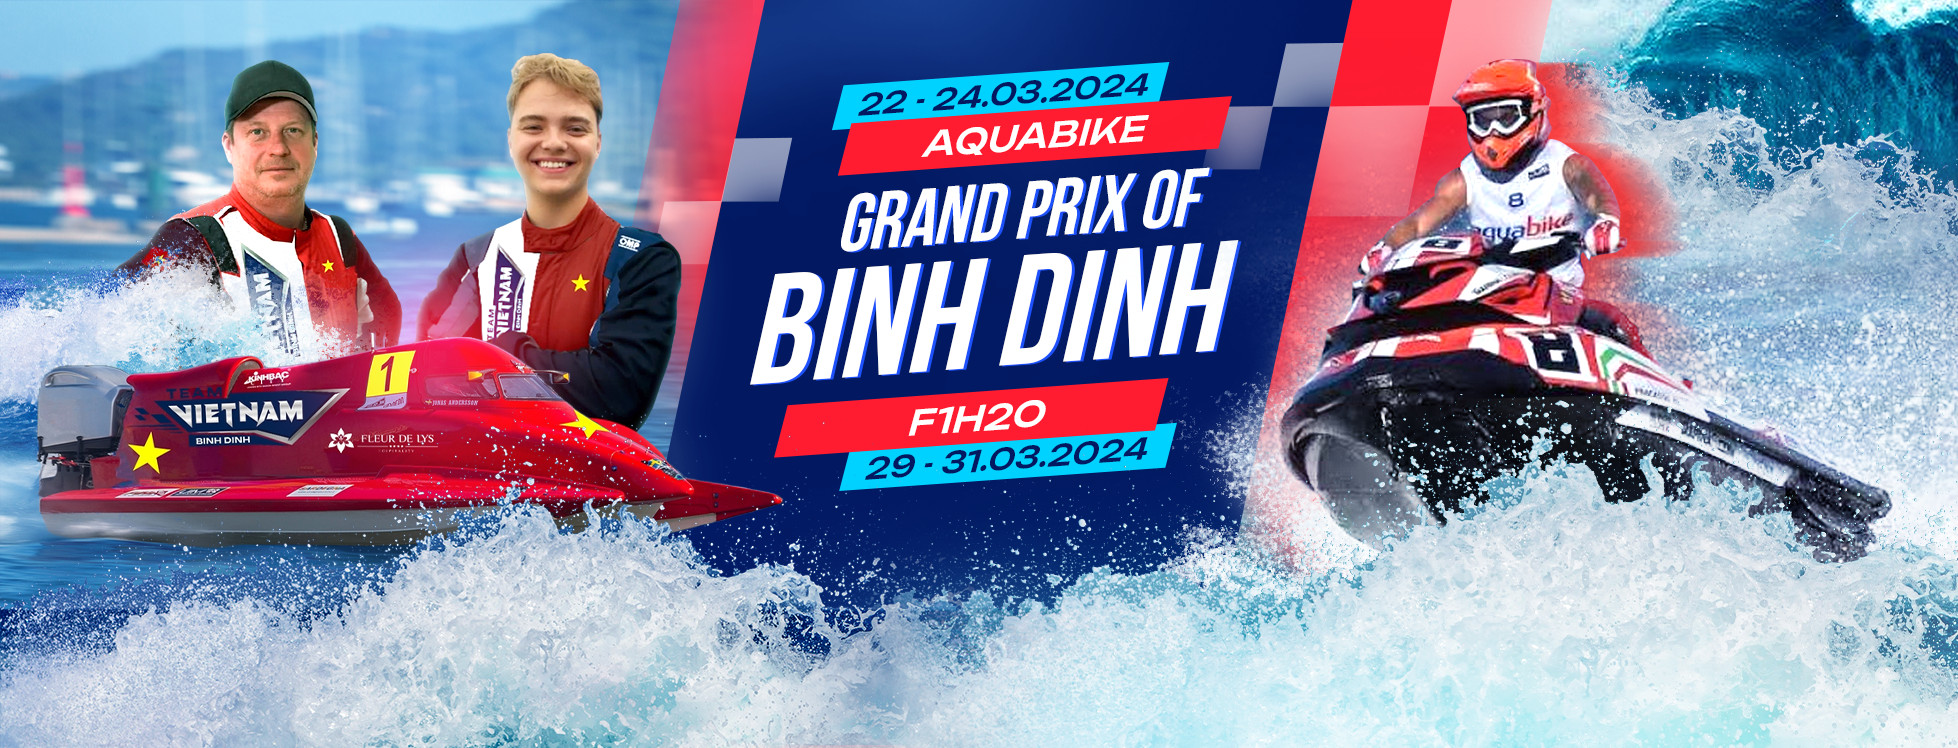 Giải đua thuyền máy nhà nghề quốc tế - Grand Prix of Binh Dinh sẽ được tổ chức vào cuối tháng 3 tại Bình Định - 1